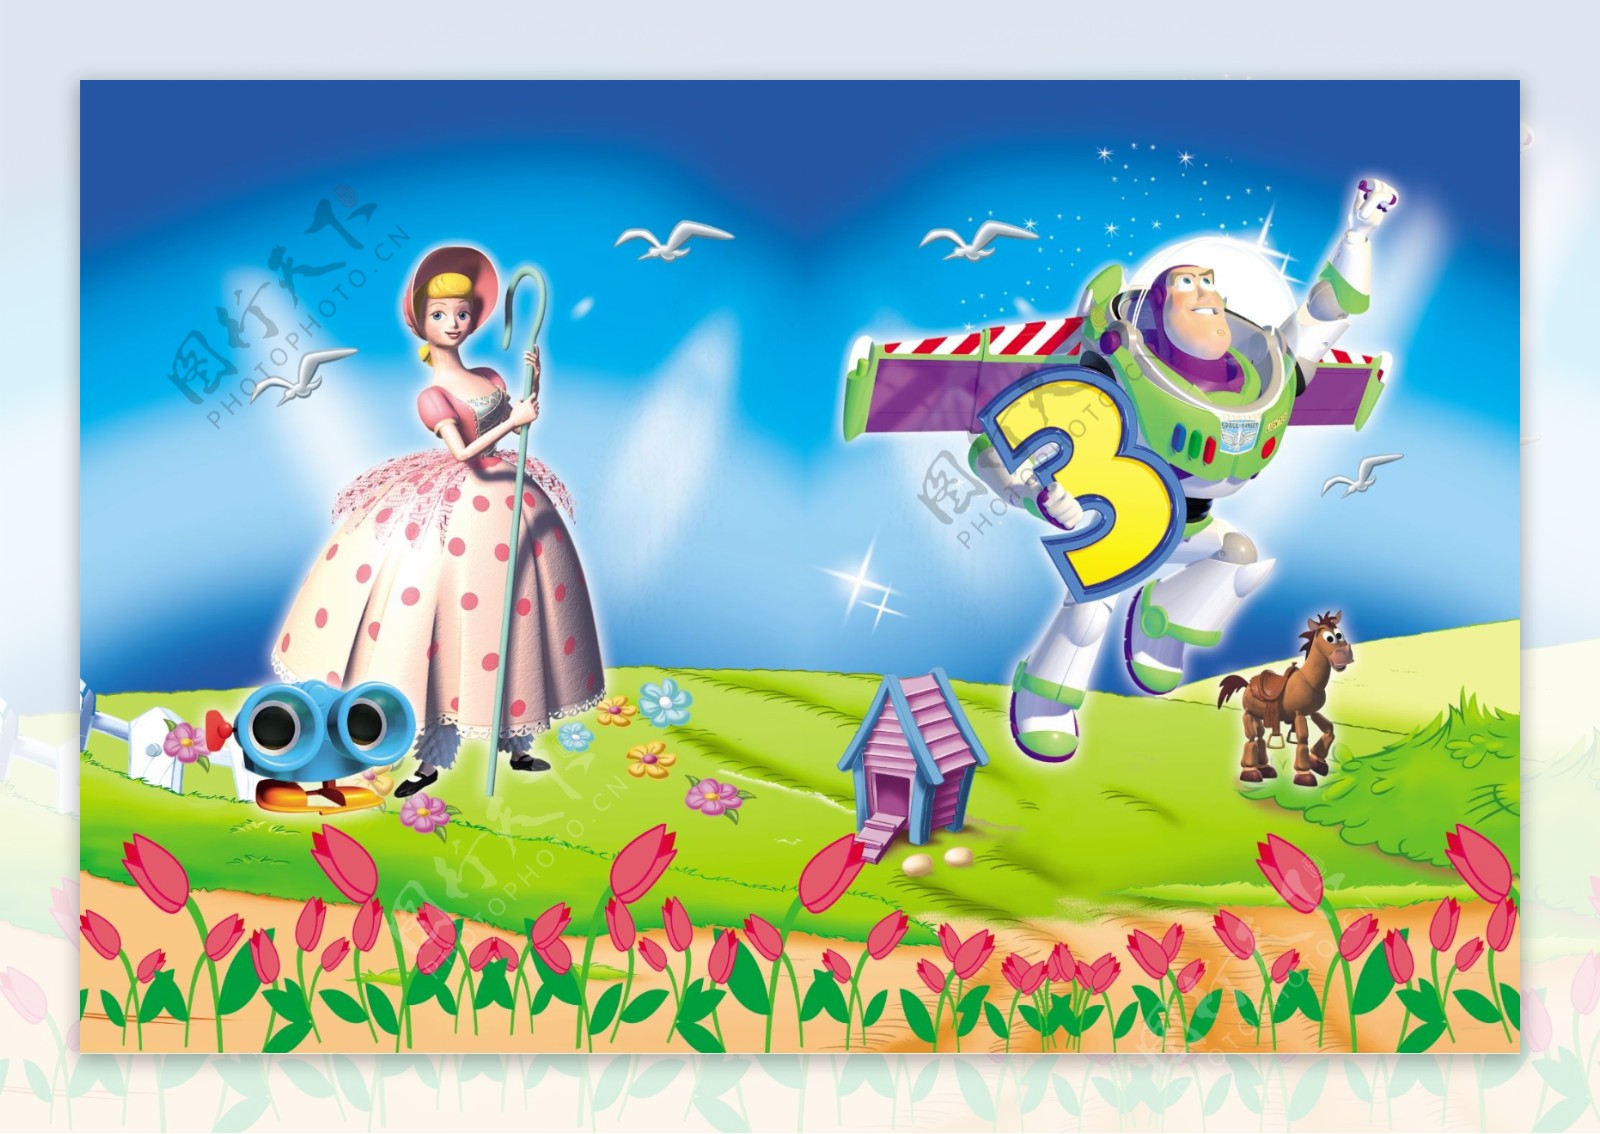 玩具总动员toystory本本封面设计图片